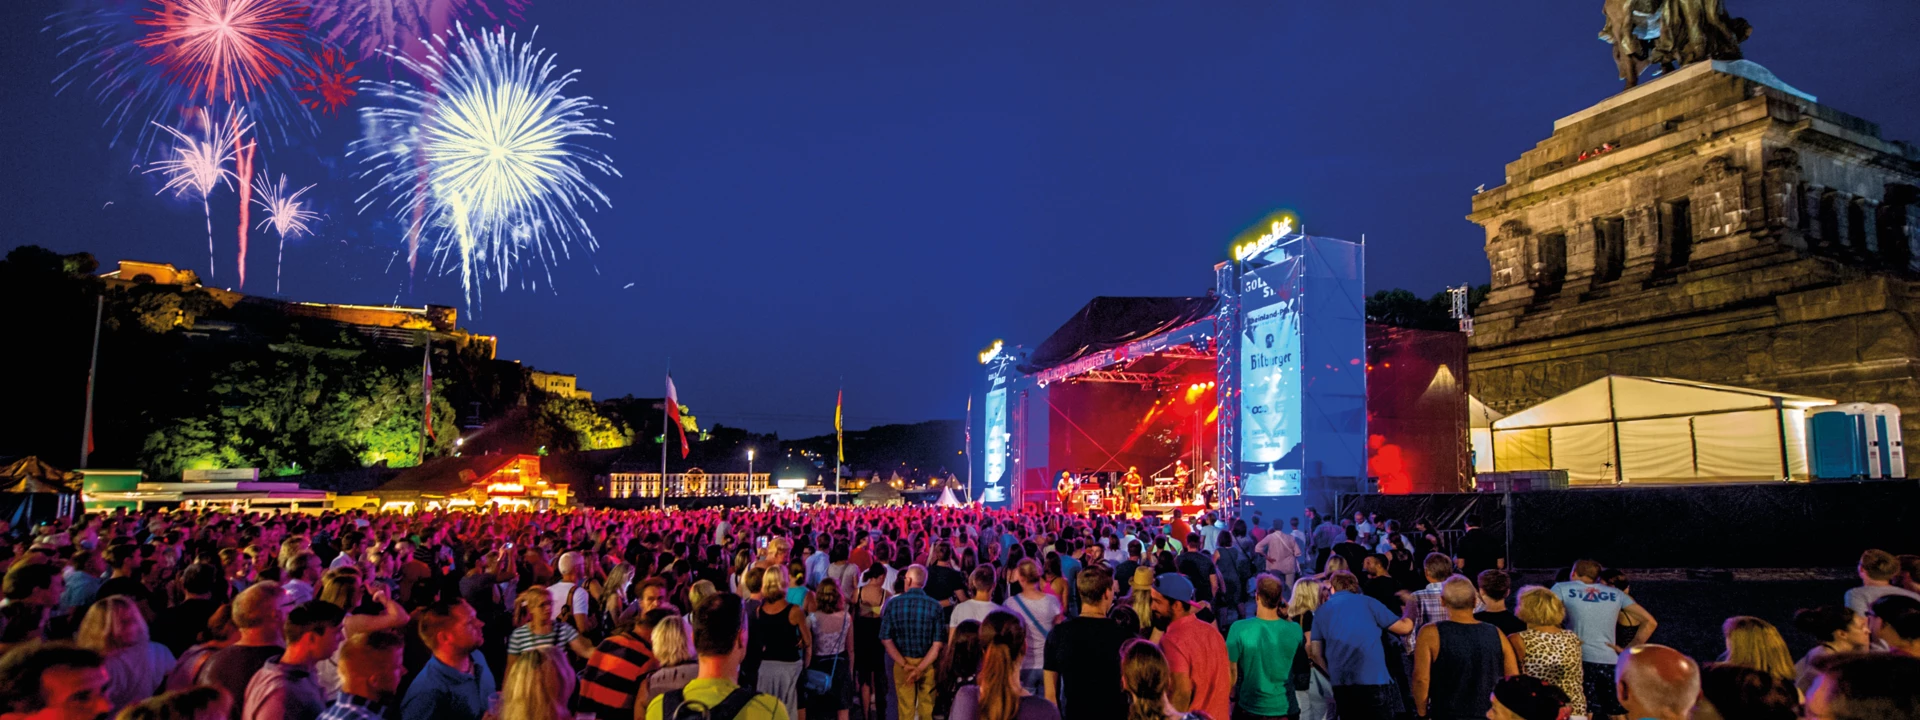 Konzert am Deutschen Eck während Sommerfest zu Rhein in Flammen mit Feuerwerken im Hintergrund ©Koblenz-Touristik GmbH, Artur Lik